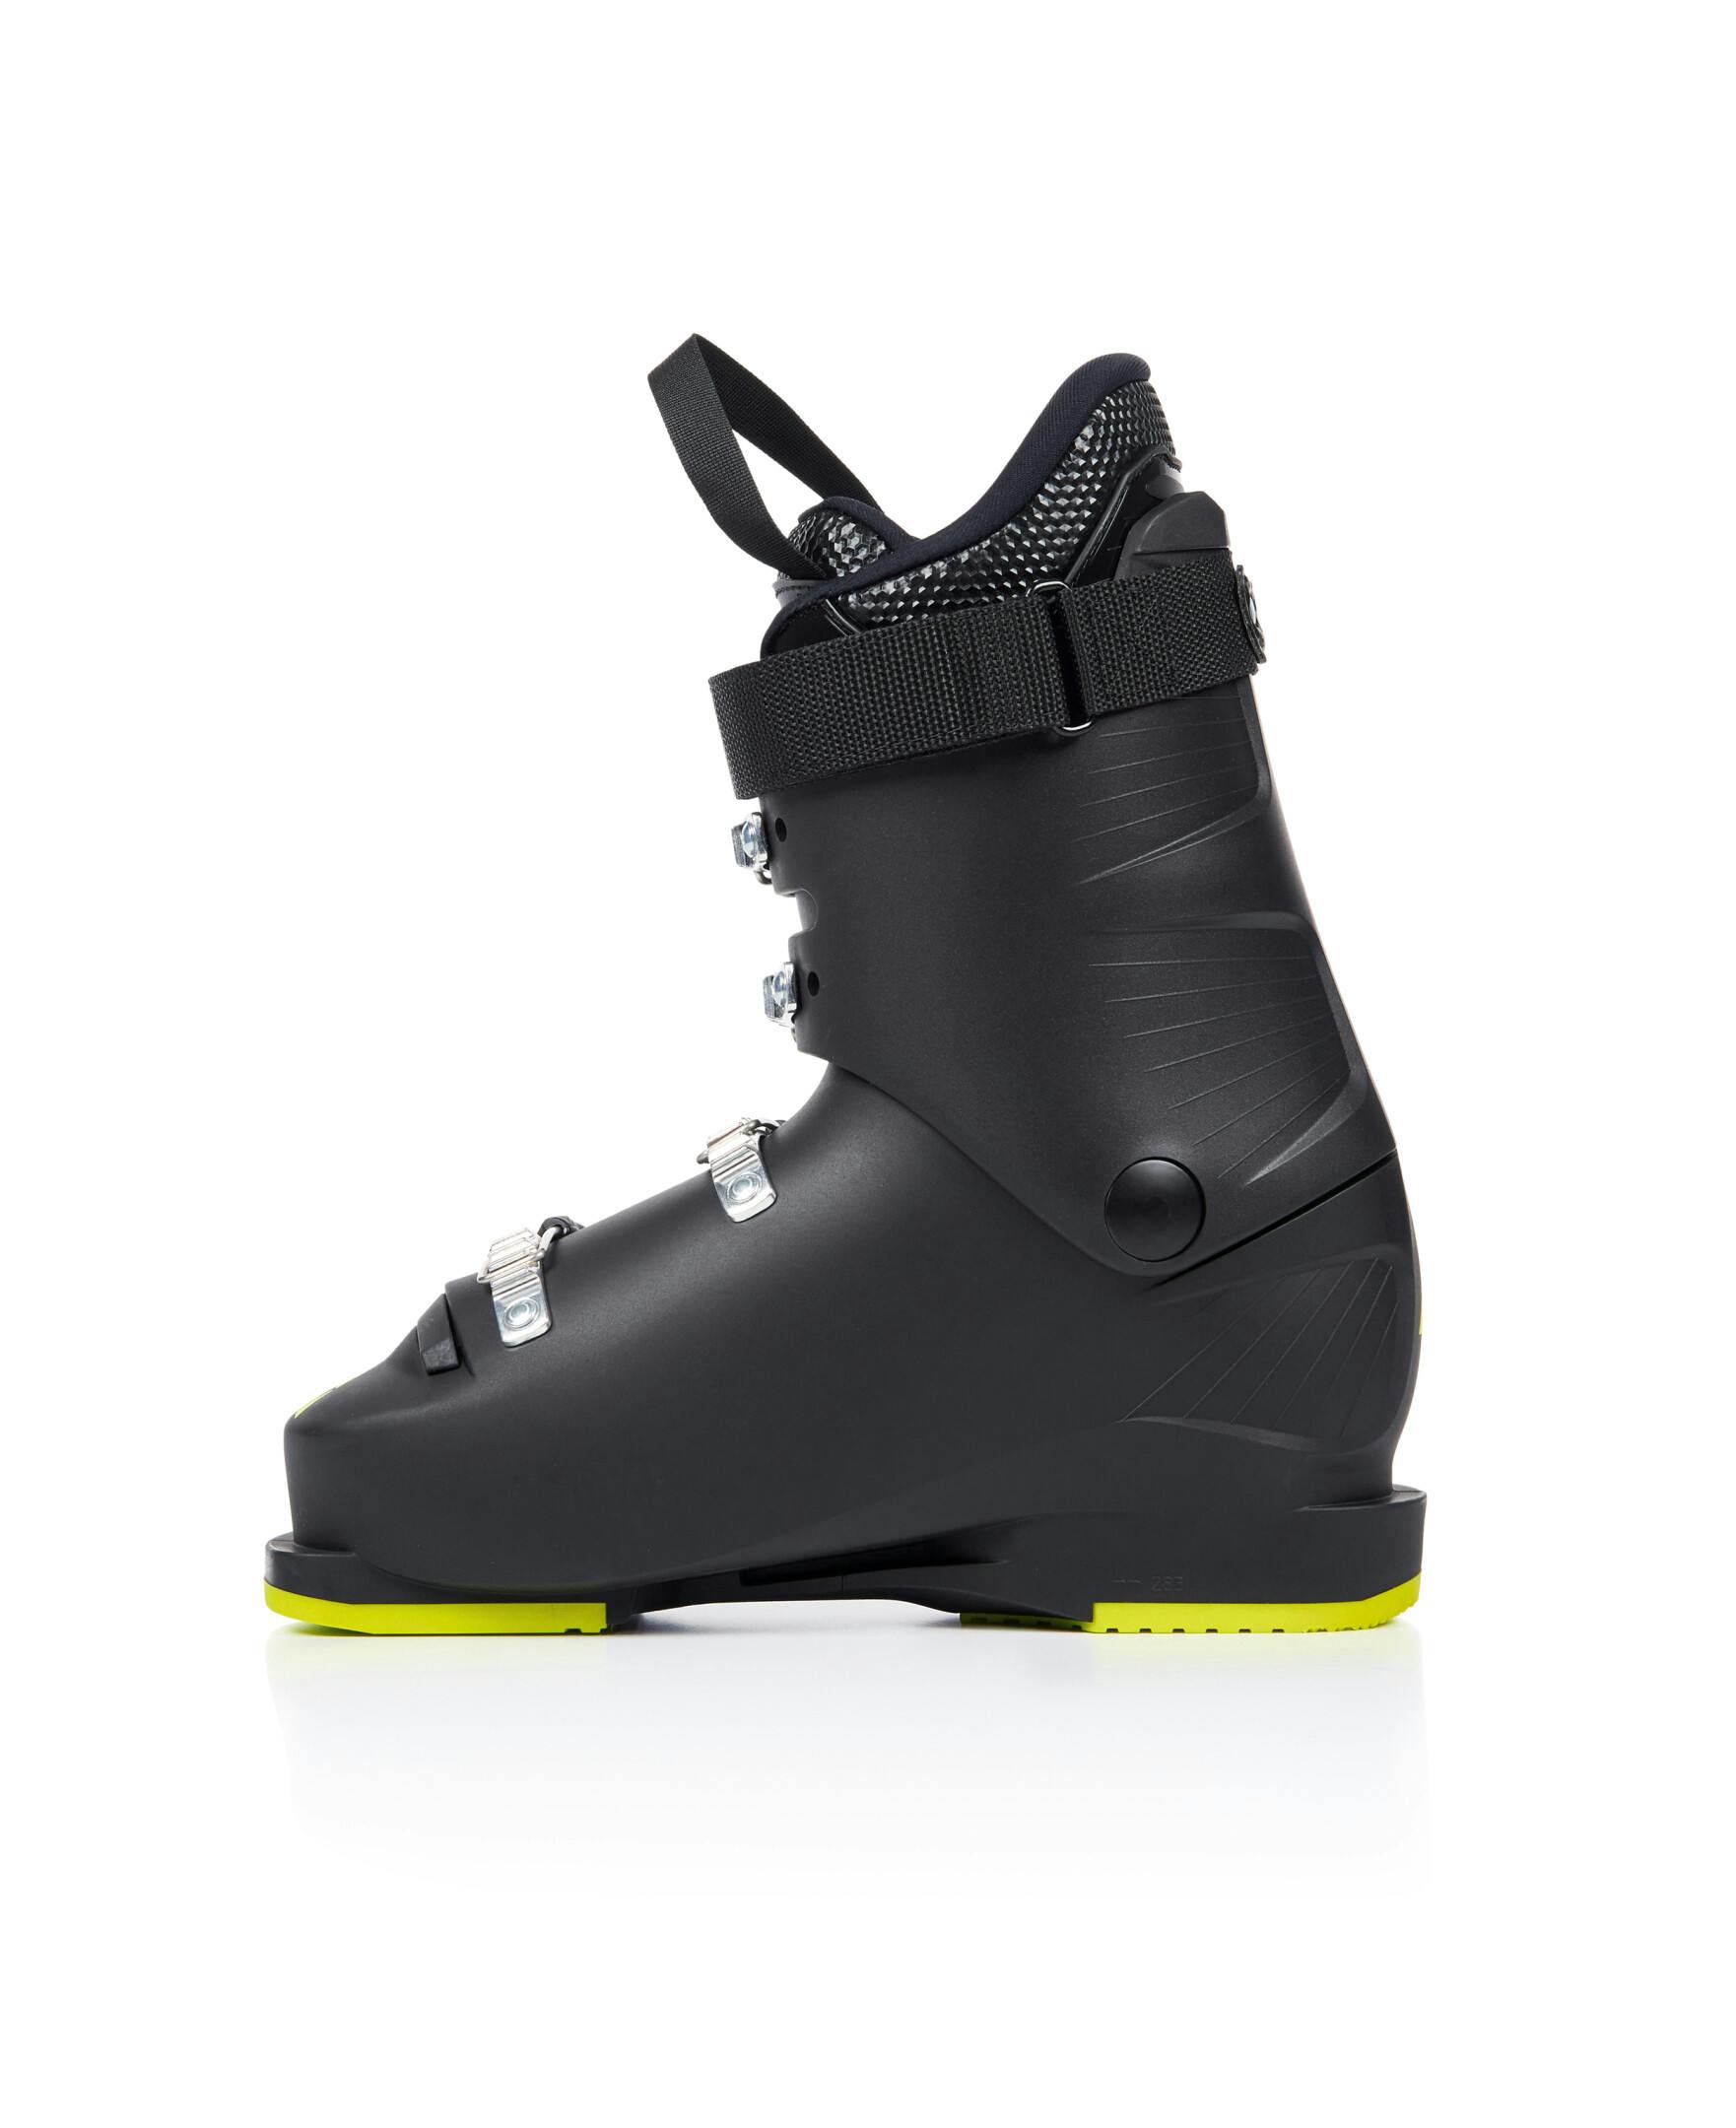 Fischer RC4 60 Junior Ski Boots · Kids' · 2023